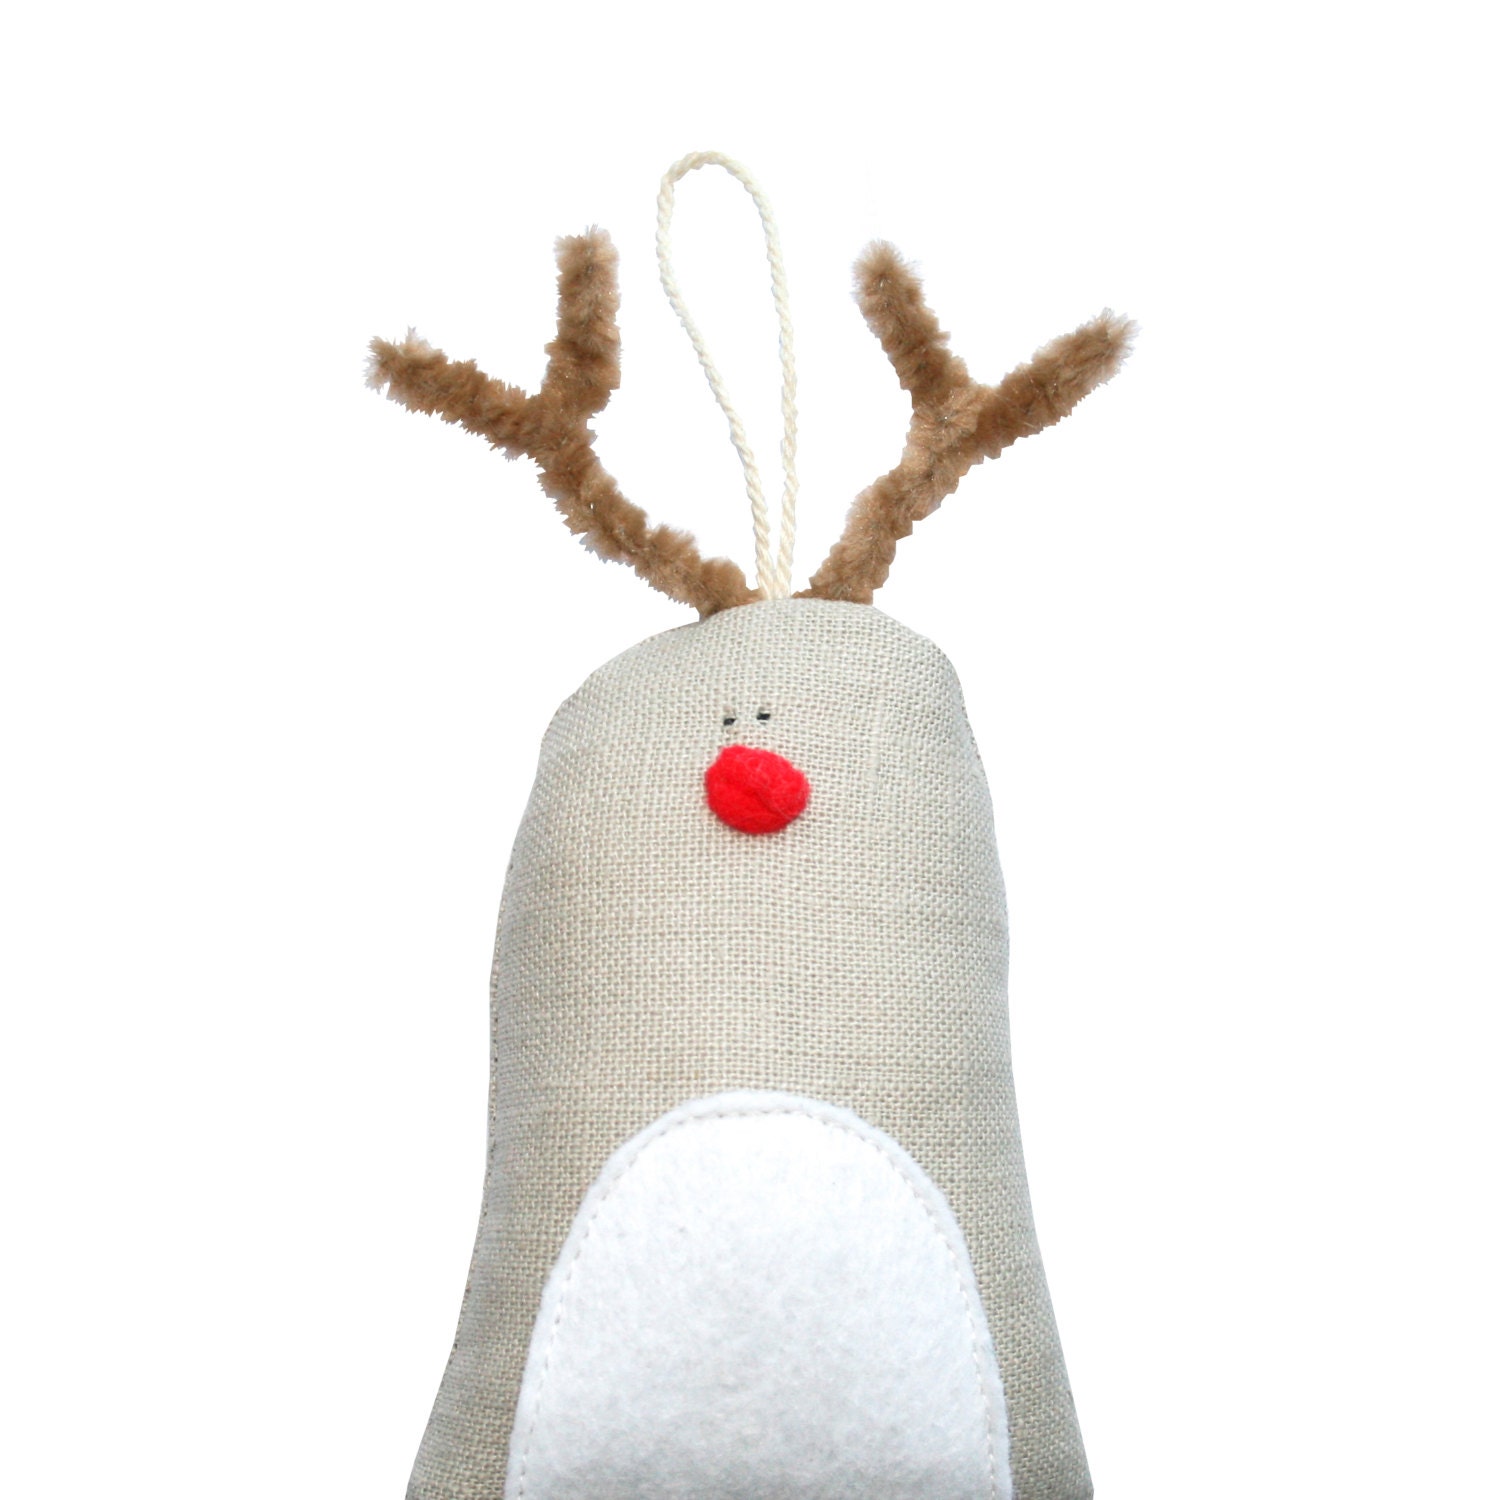 Reindeer Ornament, Cute Reindeer Christmas Tree Decoration, Red Nose Reindeer Tree Ornament, Cute Christmas Decoration, Winter, Brown, Red - poosac